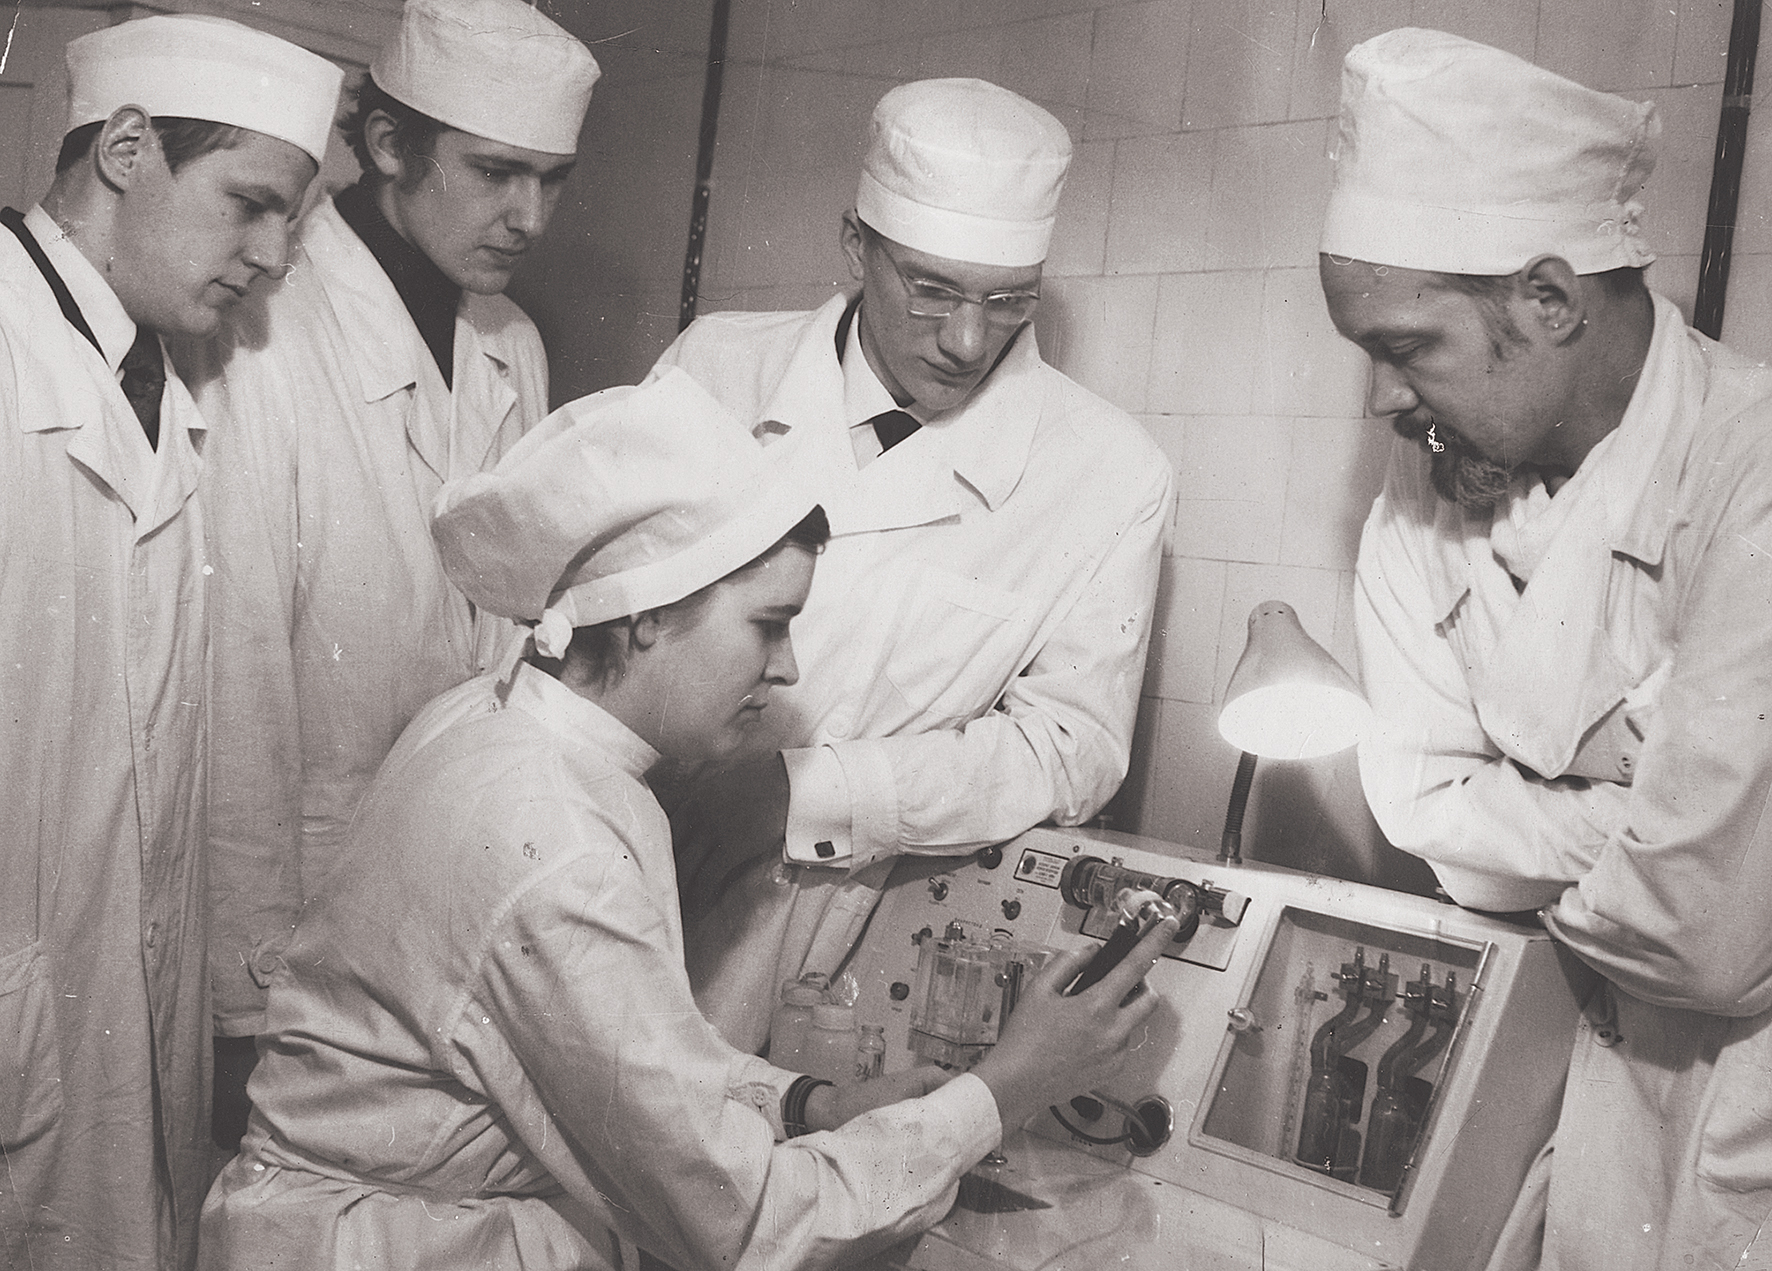 Bērnu Klīniskās slimnīcas Bērnu ķirurģijas katedras telpās. No kreisās: Igors Stepanovs, Arnis Eņģelis, Egils Cunskis, prof. Jānis Gaujēns